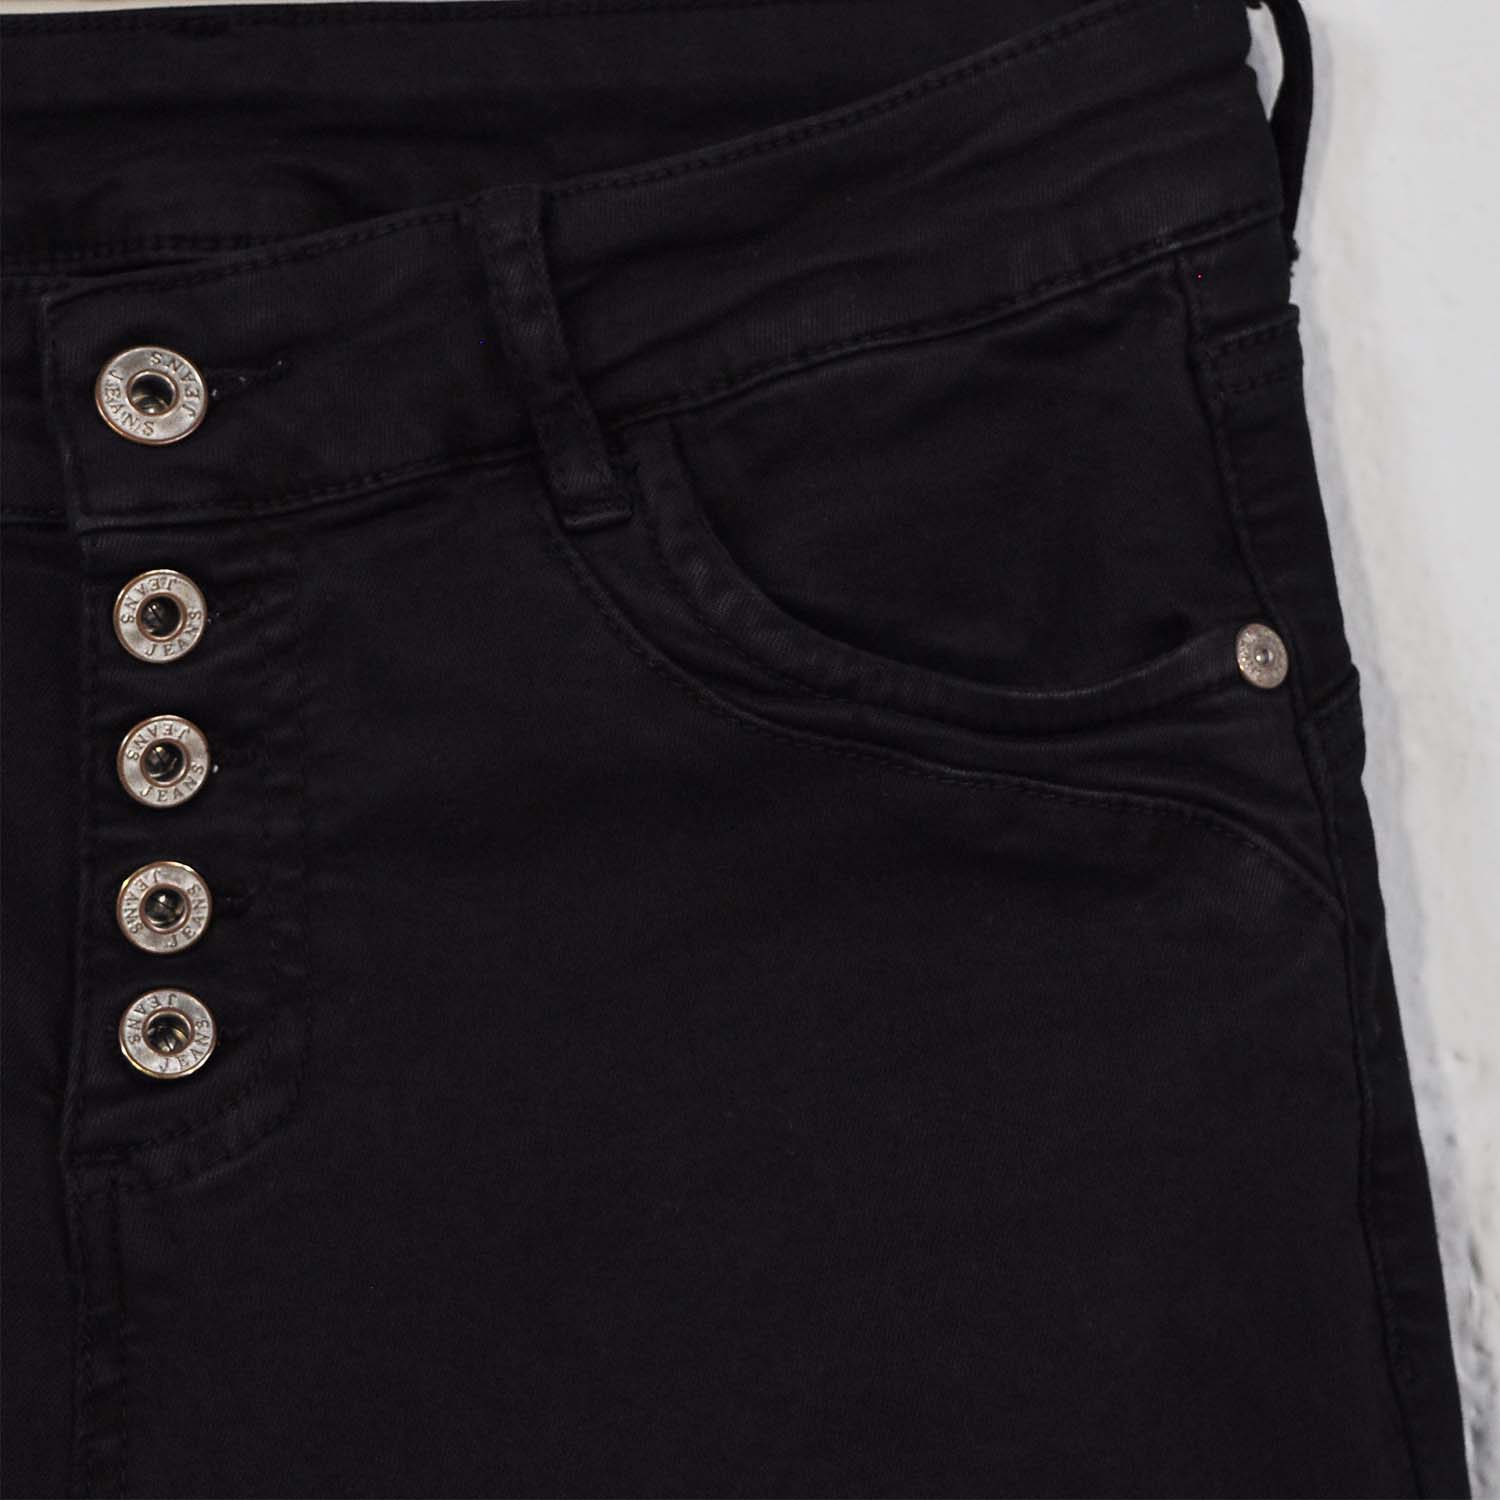 Black buttons pants